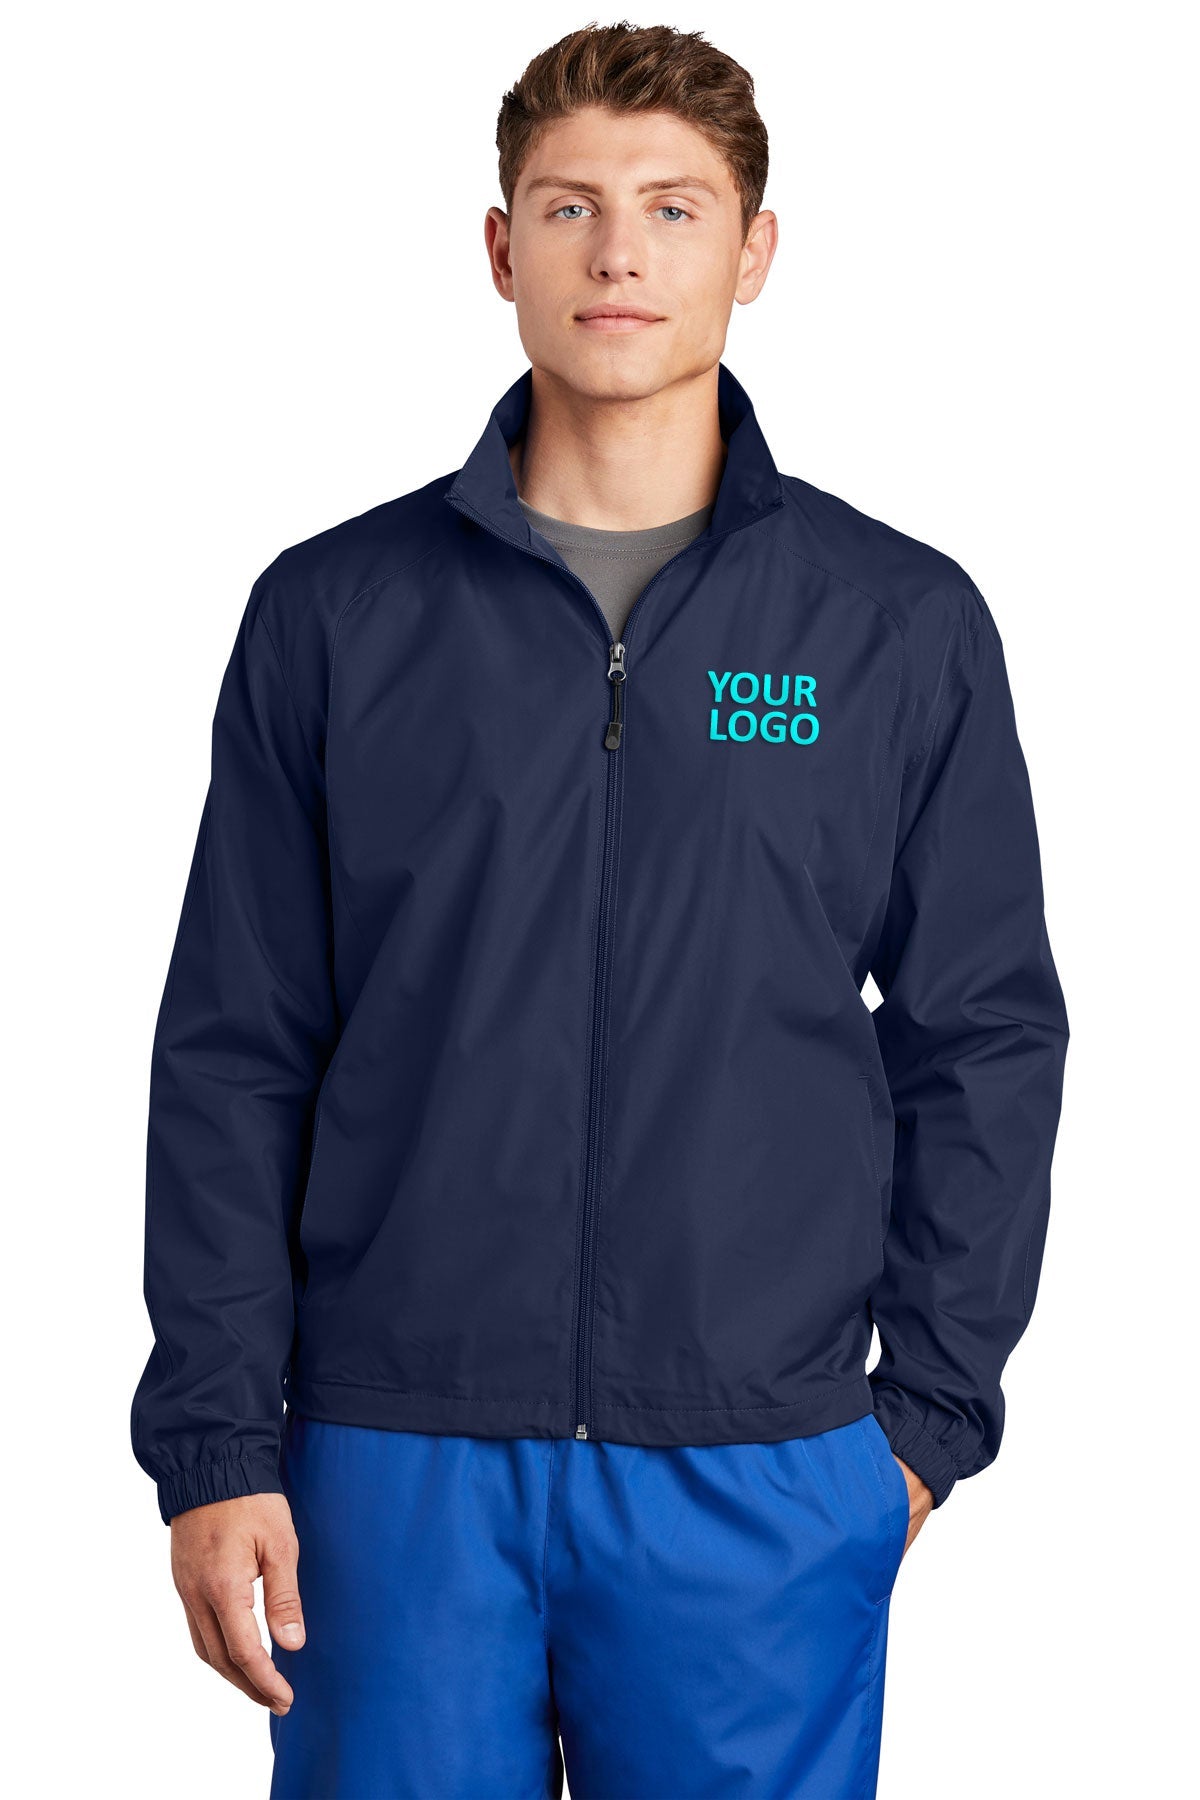 Sport-Tek True Navy JST70 company embroidered jackets